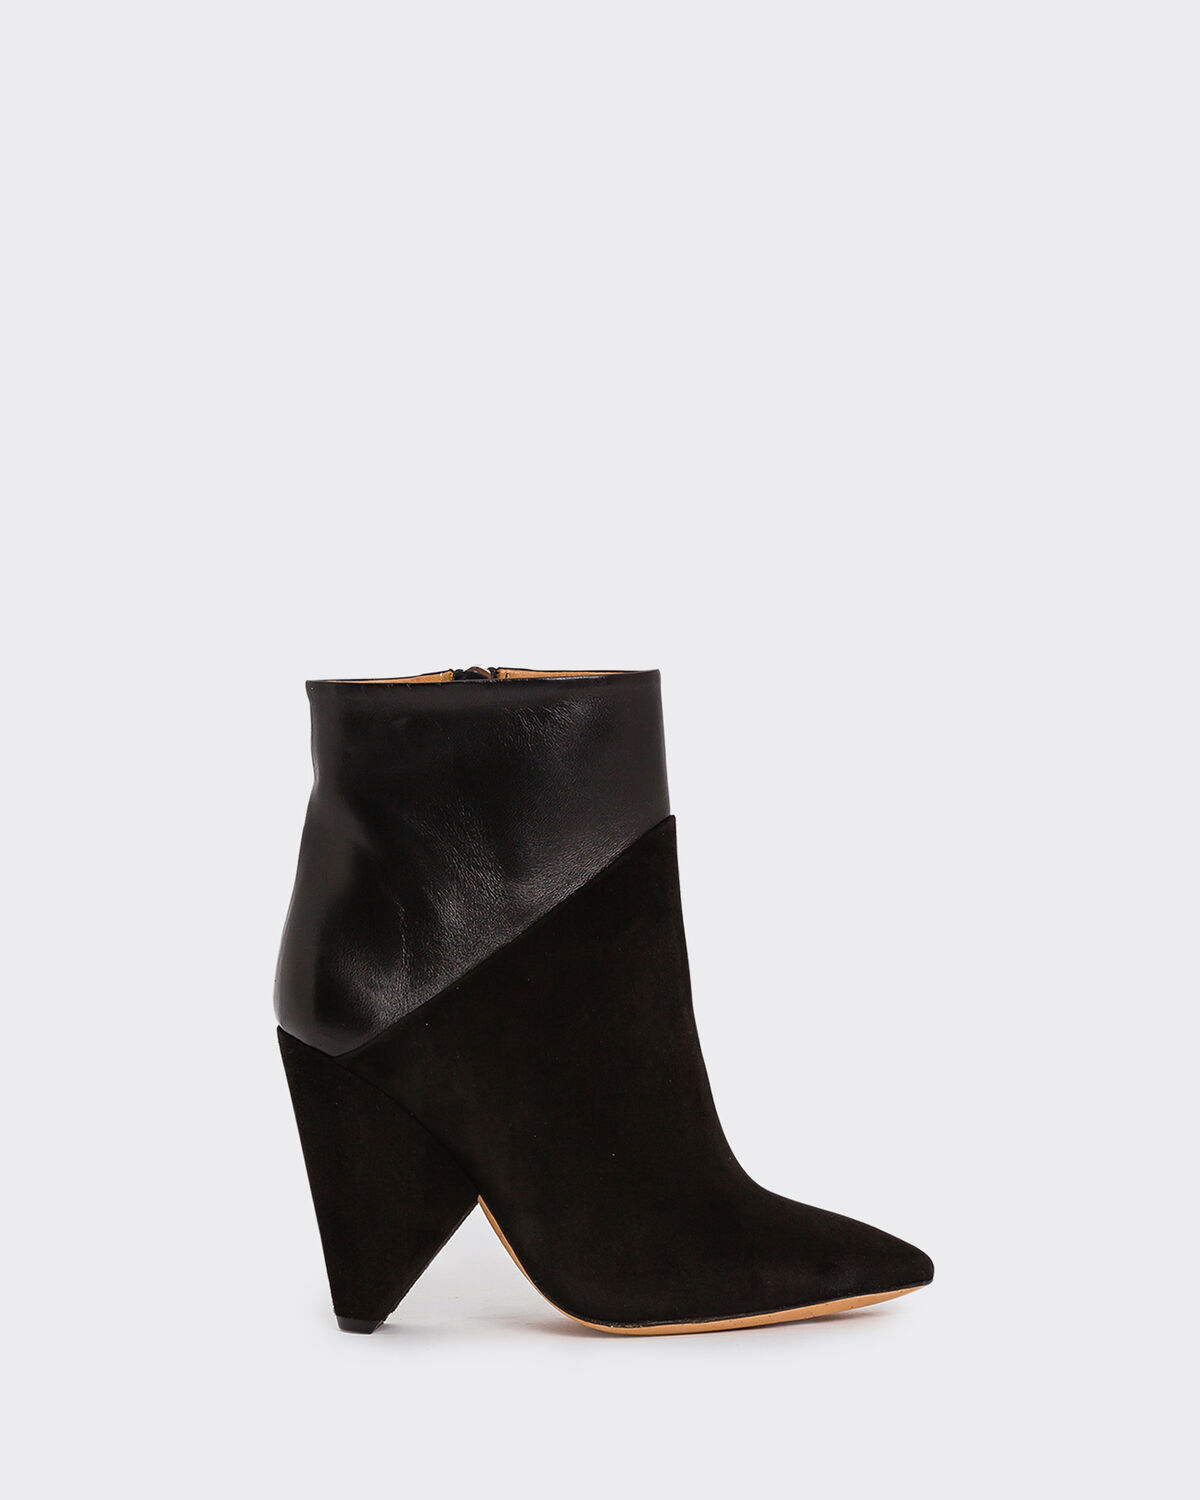 Vileana Boots Black by IRO Paris | Coshio Online Shop